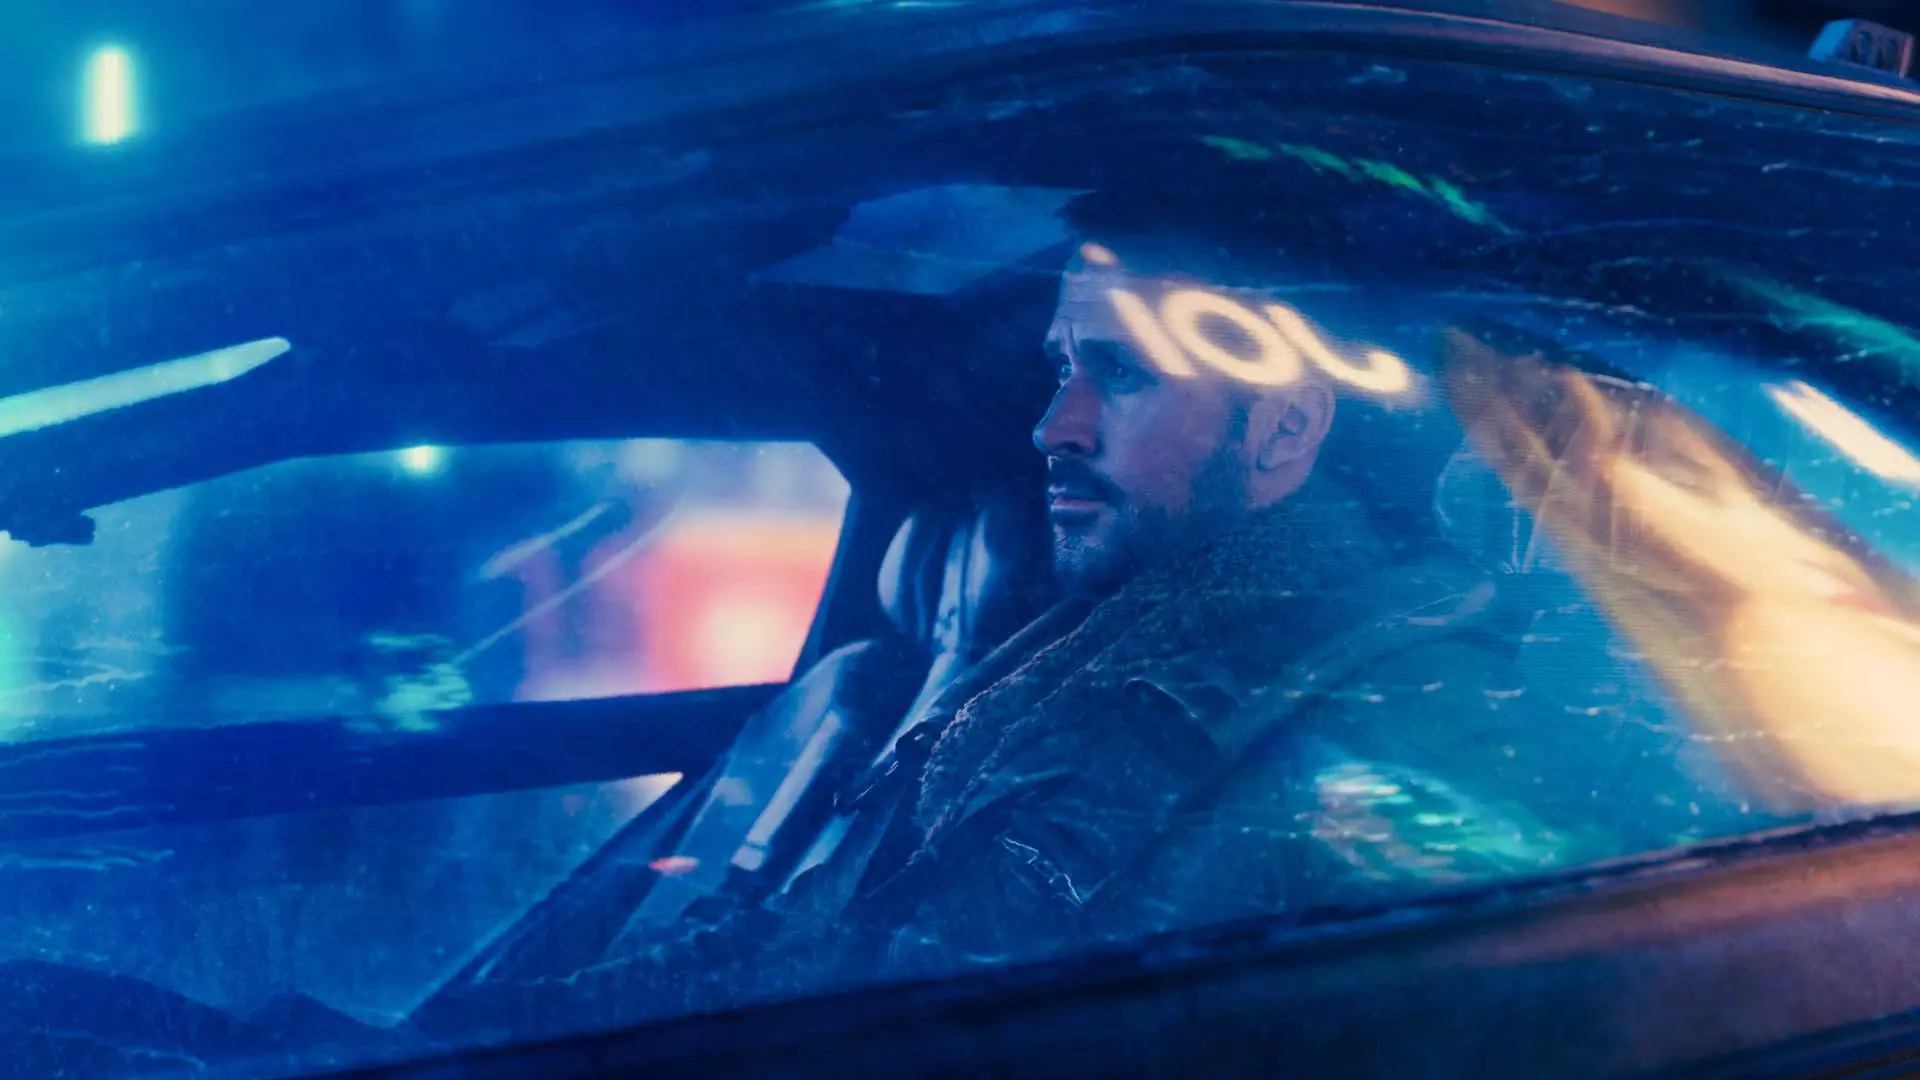 رایان گاسلینگ پشت فرمان ماشین خود در فیلم Blade Runner 2049